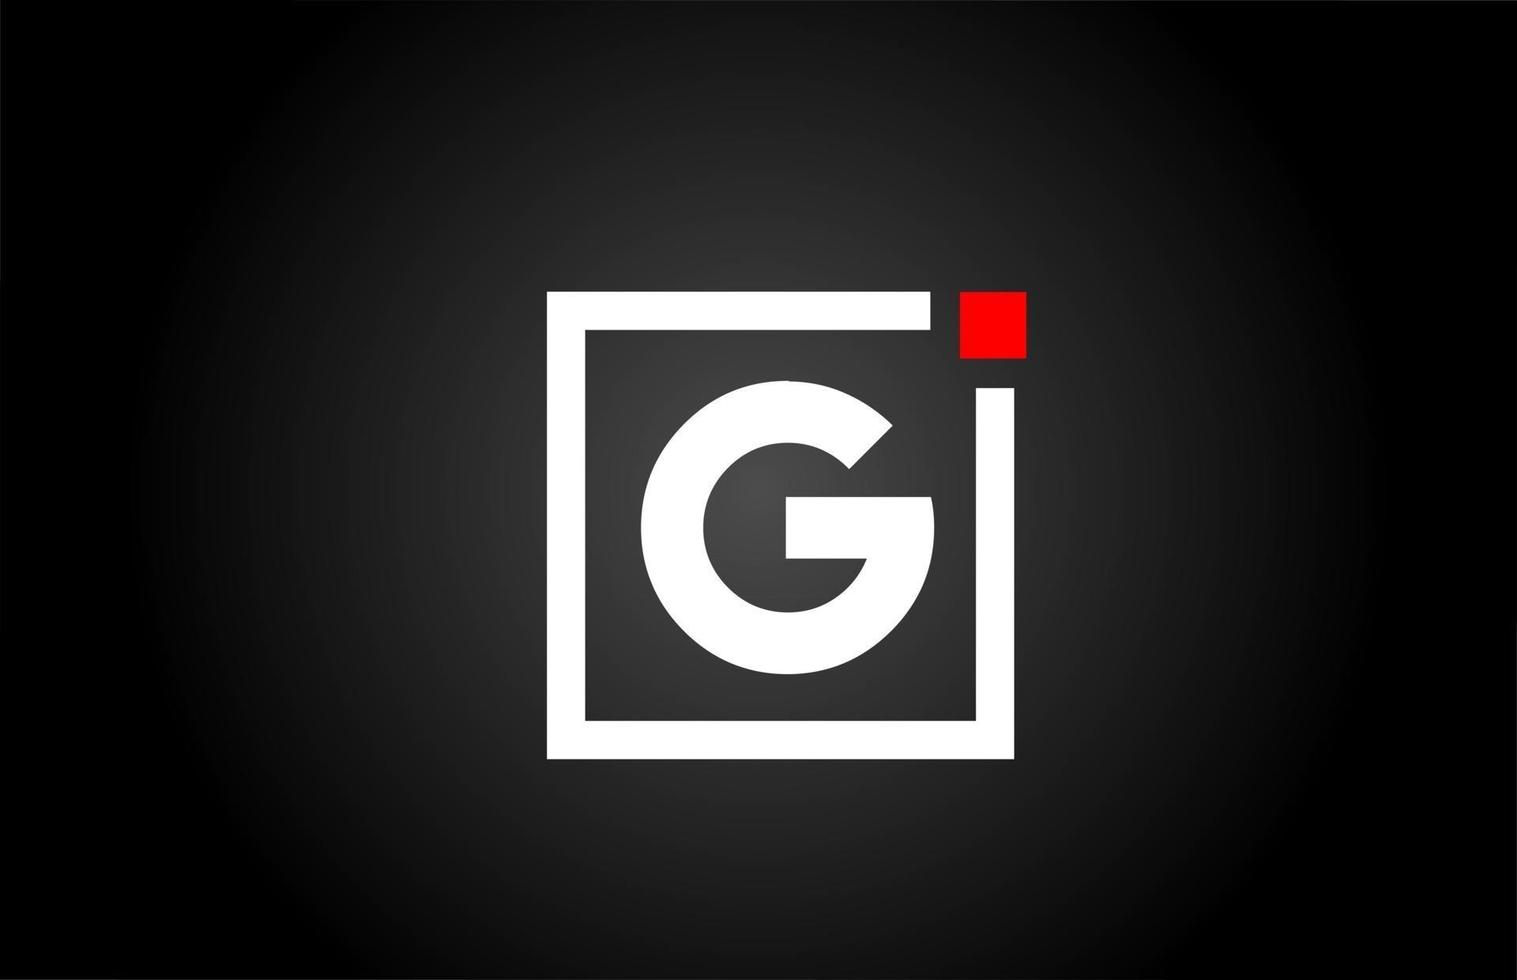 G icono del logotipo de la letra del alfabeto en color blanco y negro. diseño de empresa y negocio con punto cuadrado y rojo. plantilla de identidad corporativa creativa vector